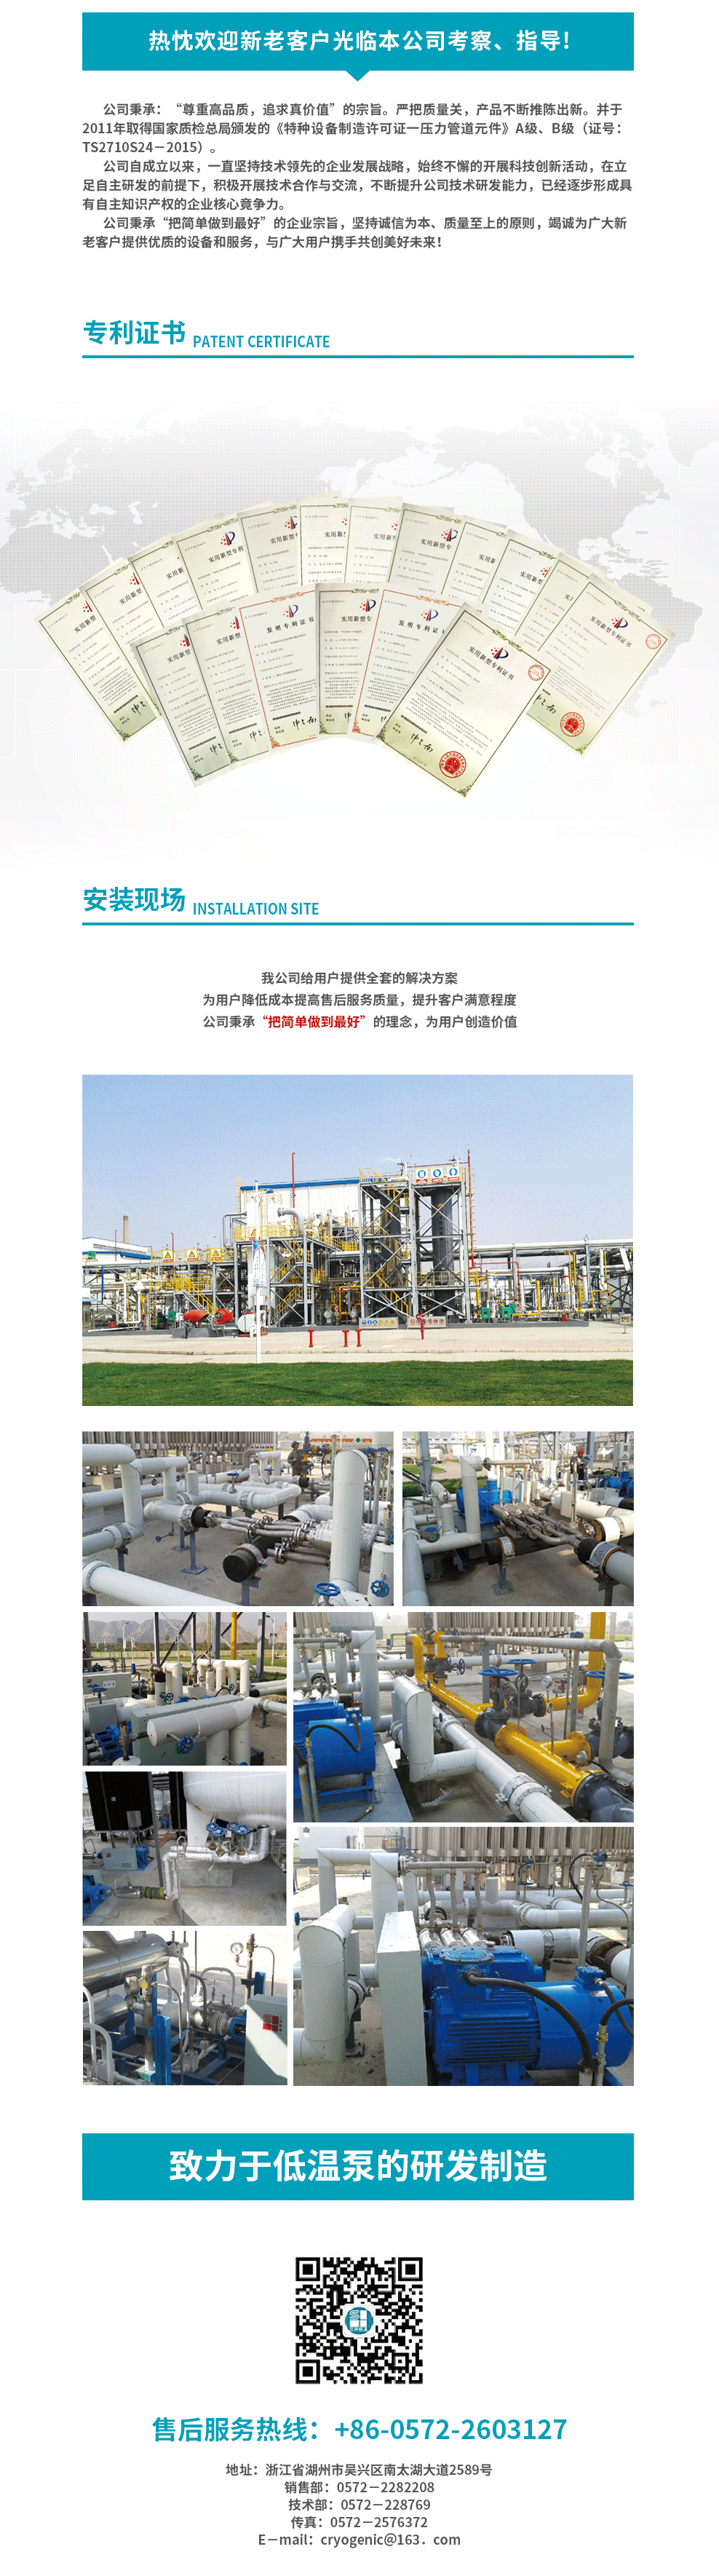 5-工业气体充瓶泵_02.png